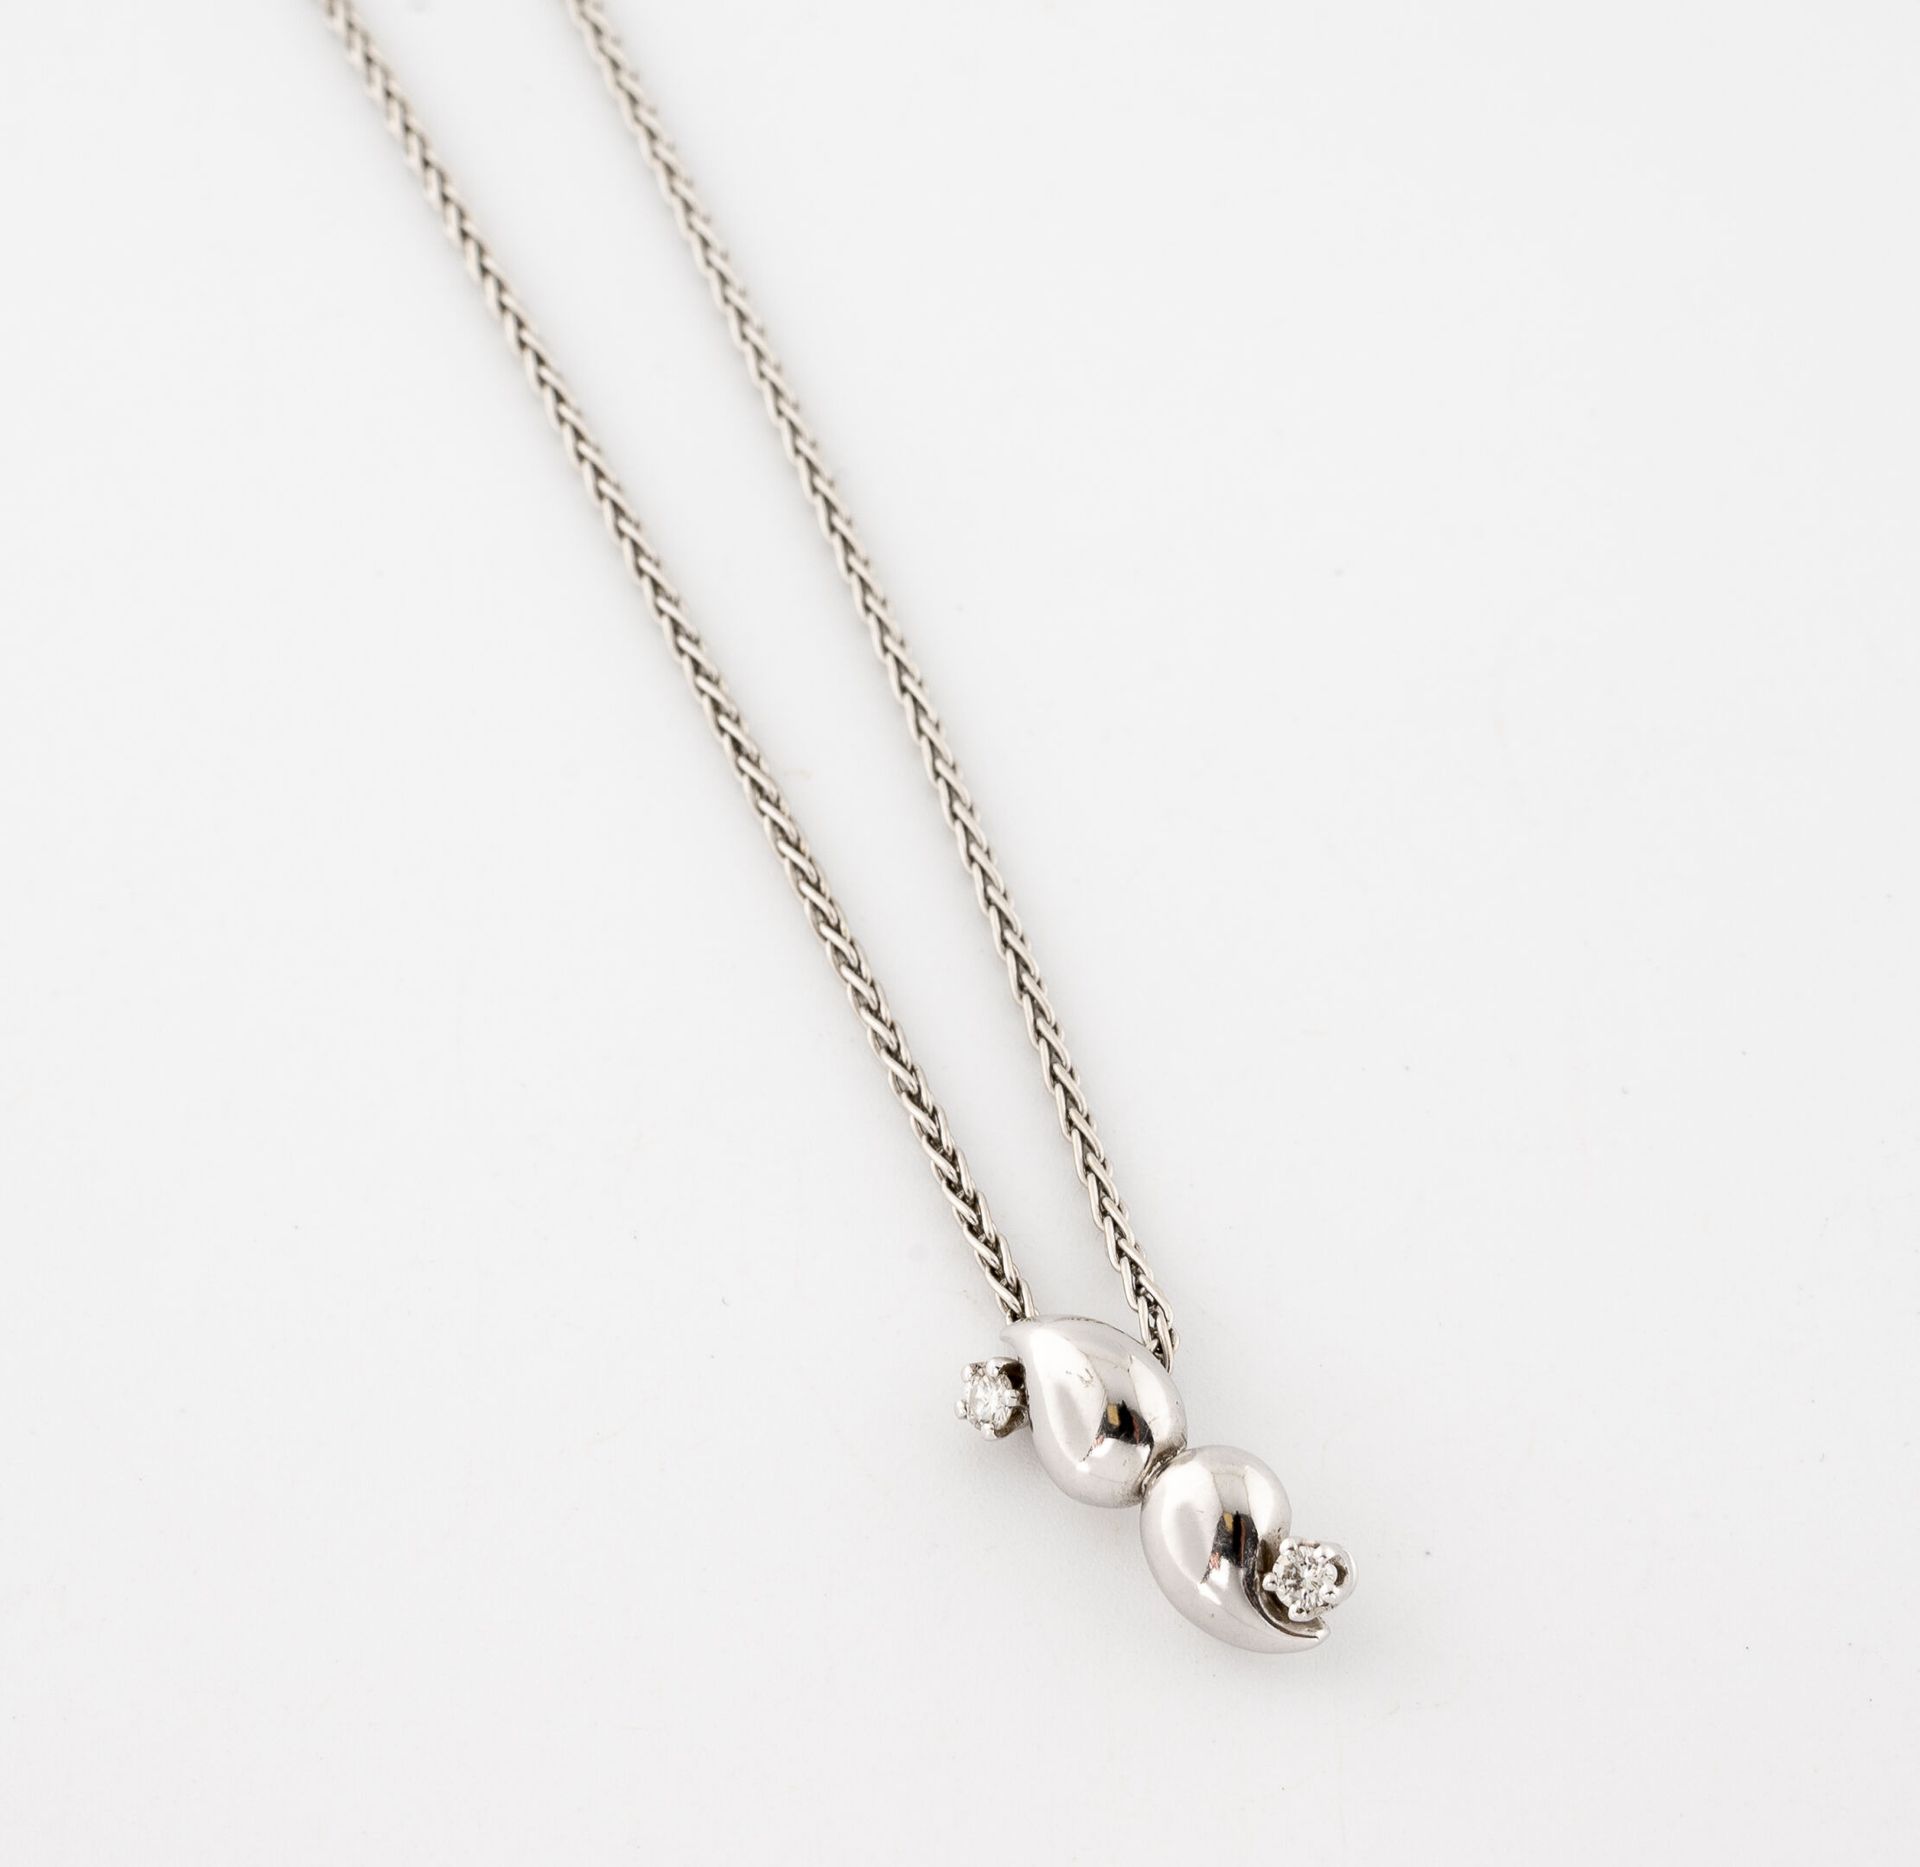 Null 白金（750）编织链和吊坠，爪式镶嵌的明亮型切割钻石。

扣子。

毛重：10.1克。- 长度：47.5厘米。